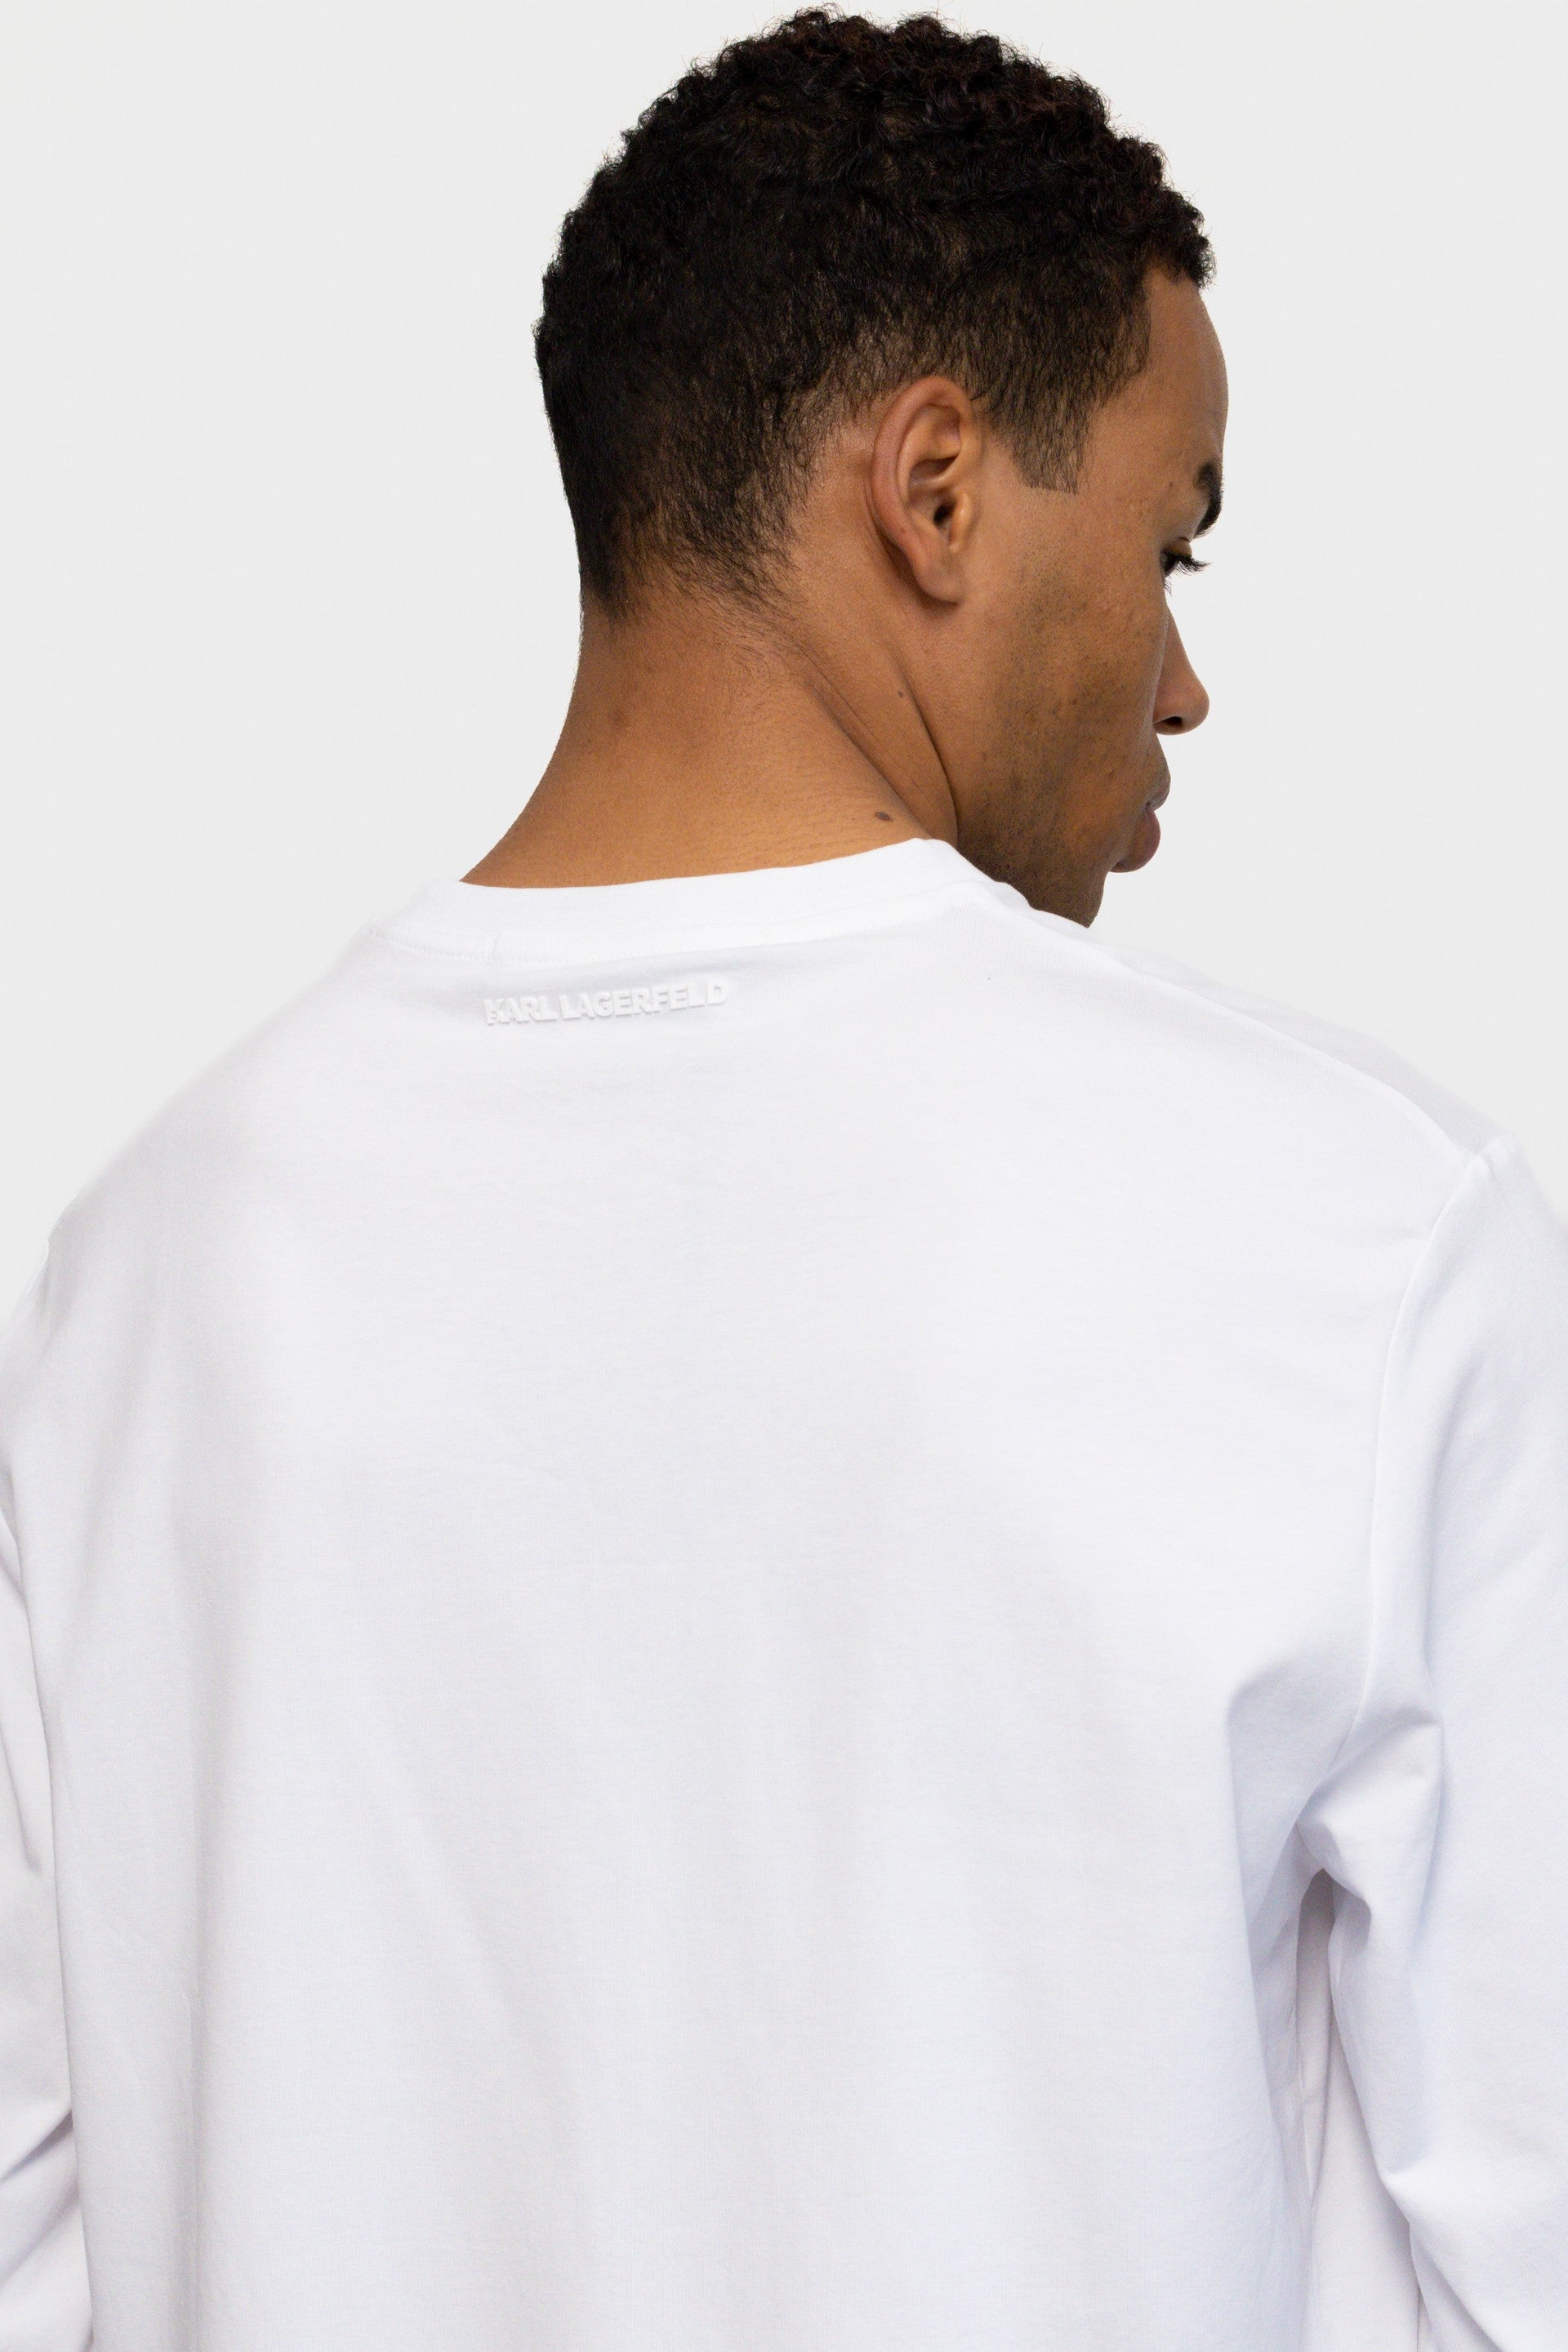 חולצת טי שירט לגברים בצבע לבן KARL LAGERFELD Vendome online | ונדום .